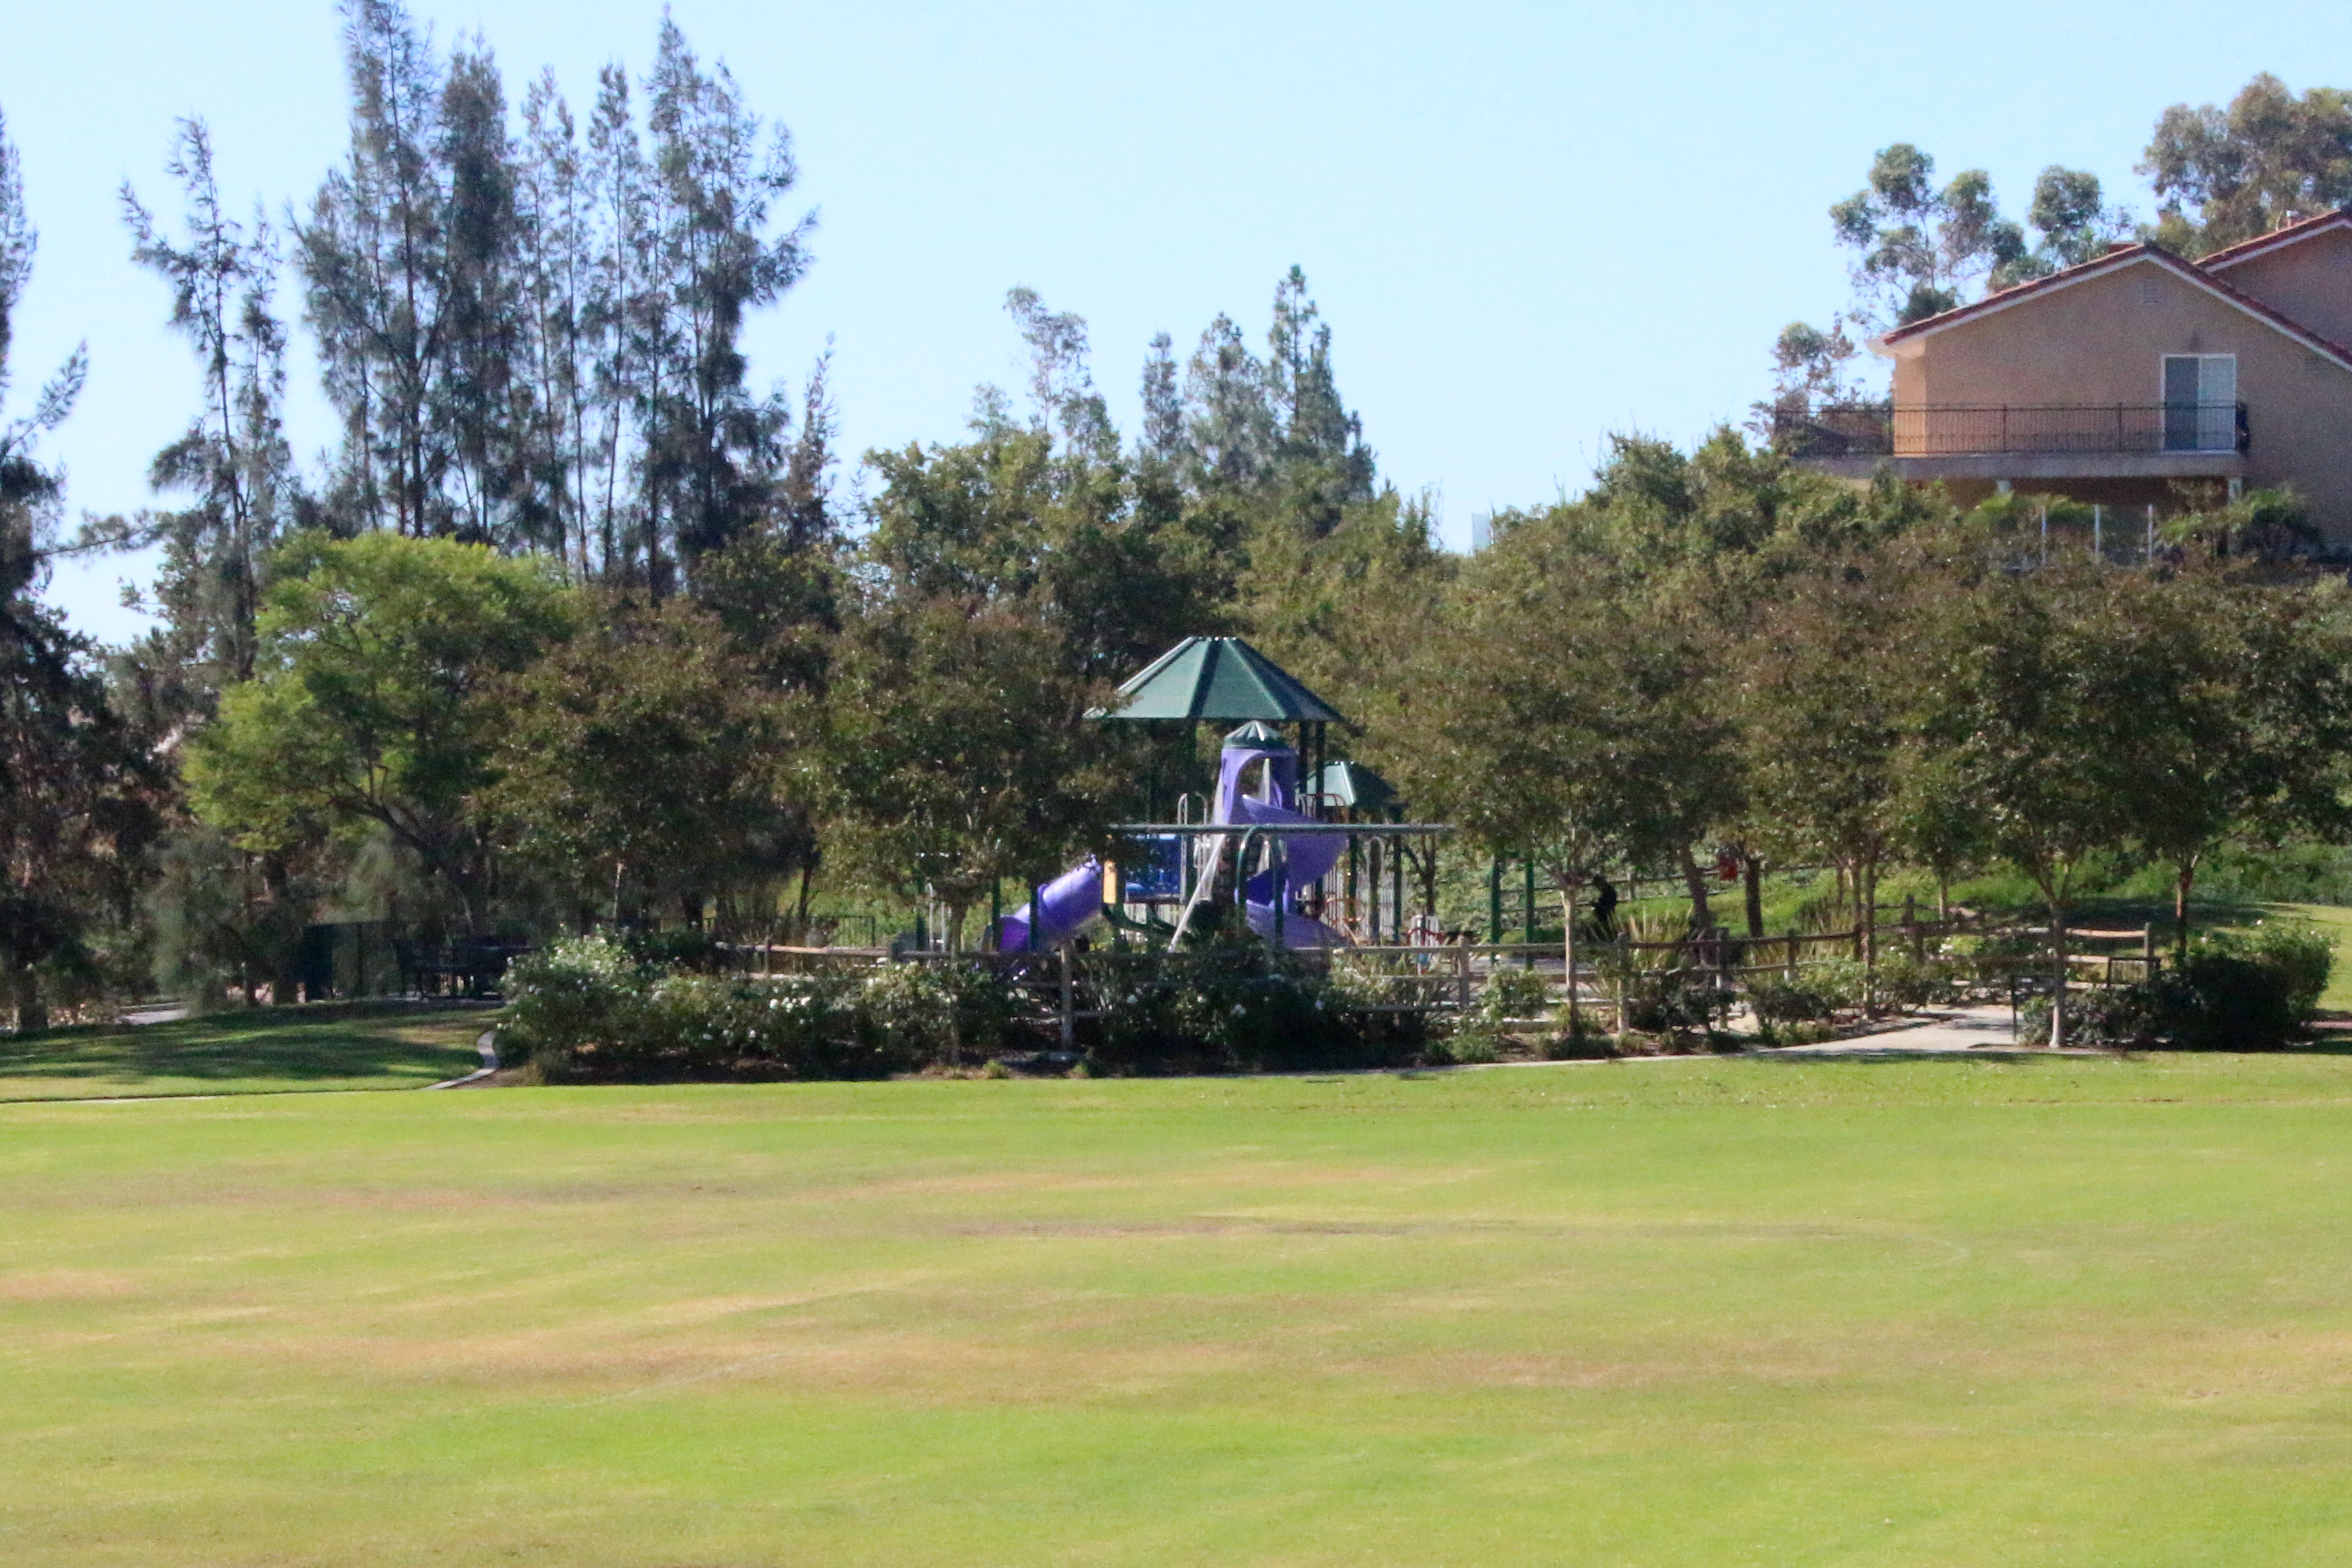 Vista del Lago Park and Playground